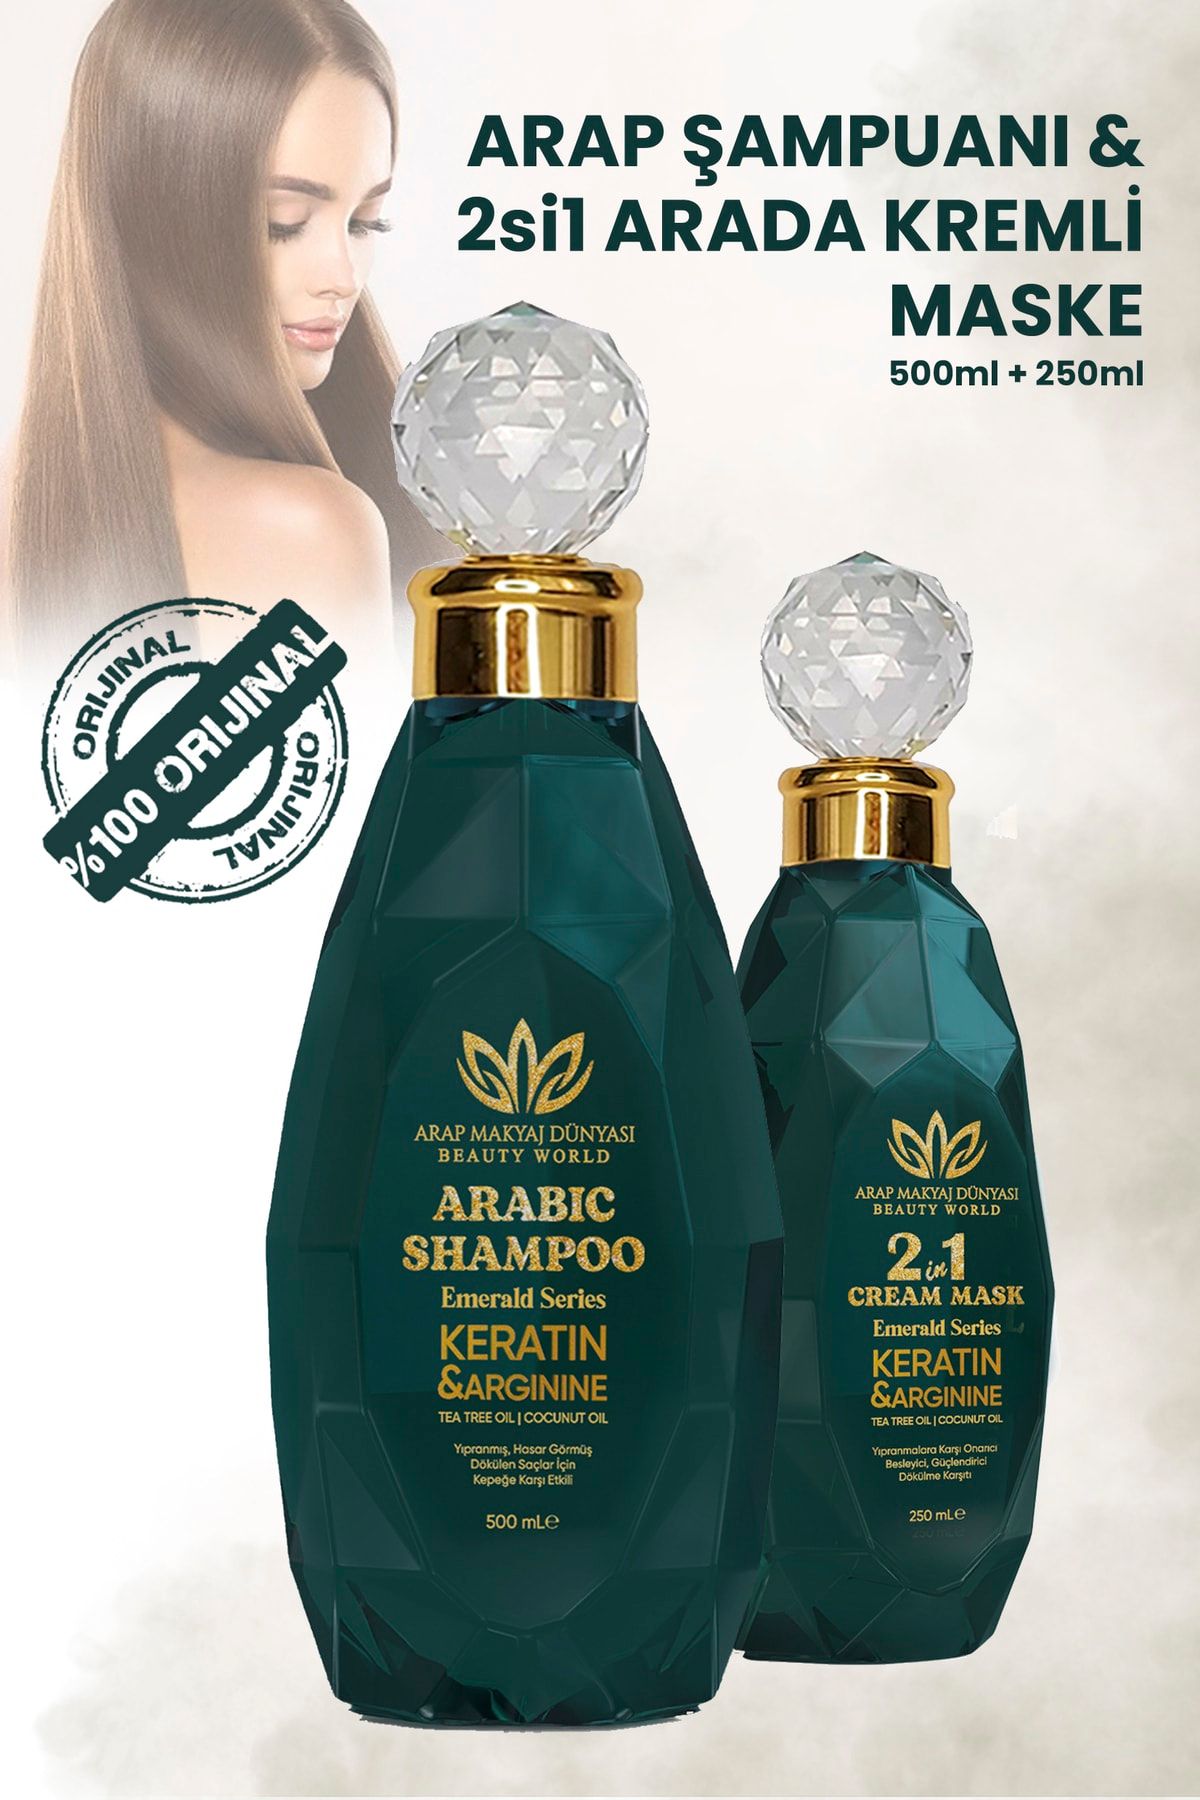 Arap Makyaj Dünyası 2'li Set Arap Şampuanı & Saç Kremi Ve Maskesi